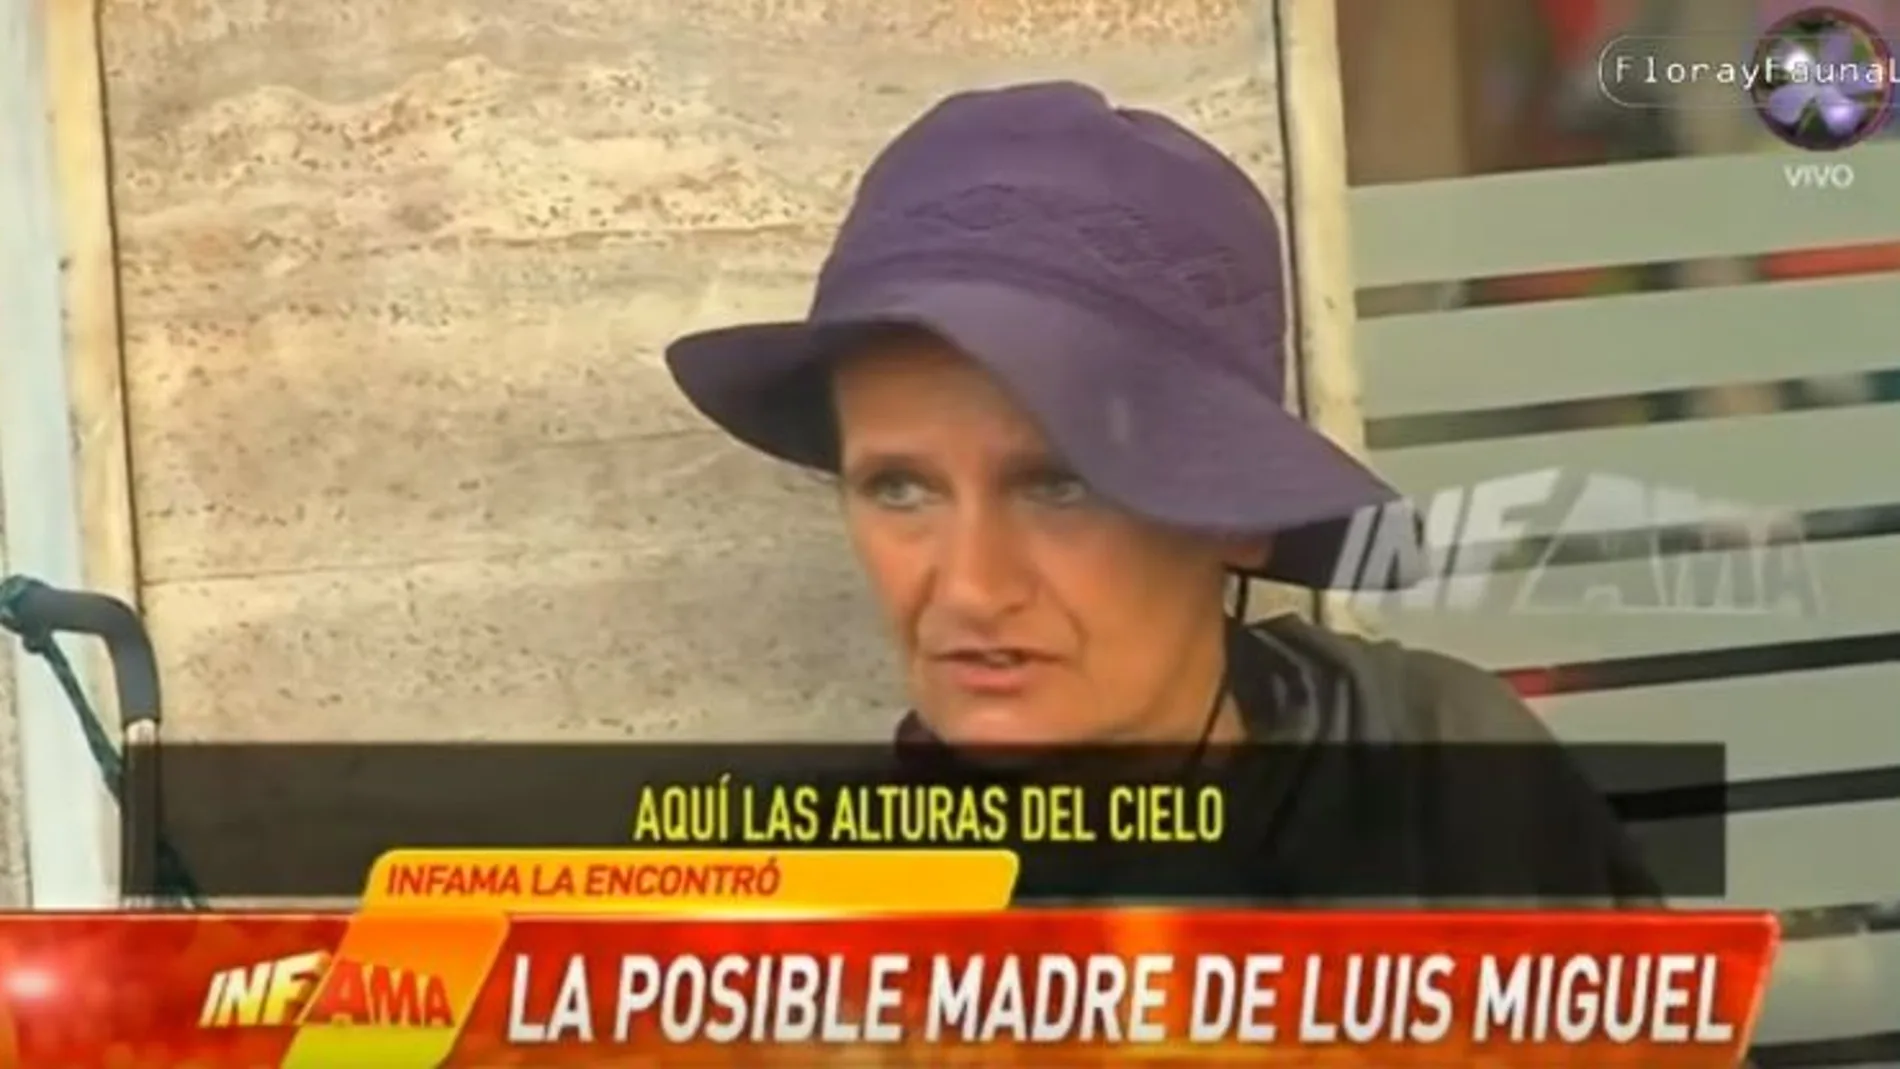 La madre de Luis Miguel es en realidad la asturiana Honoria Montes